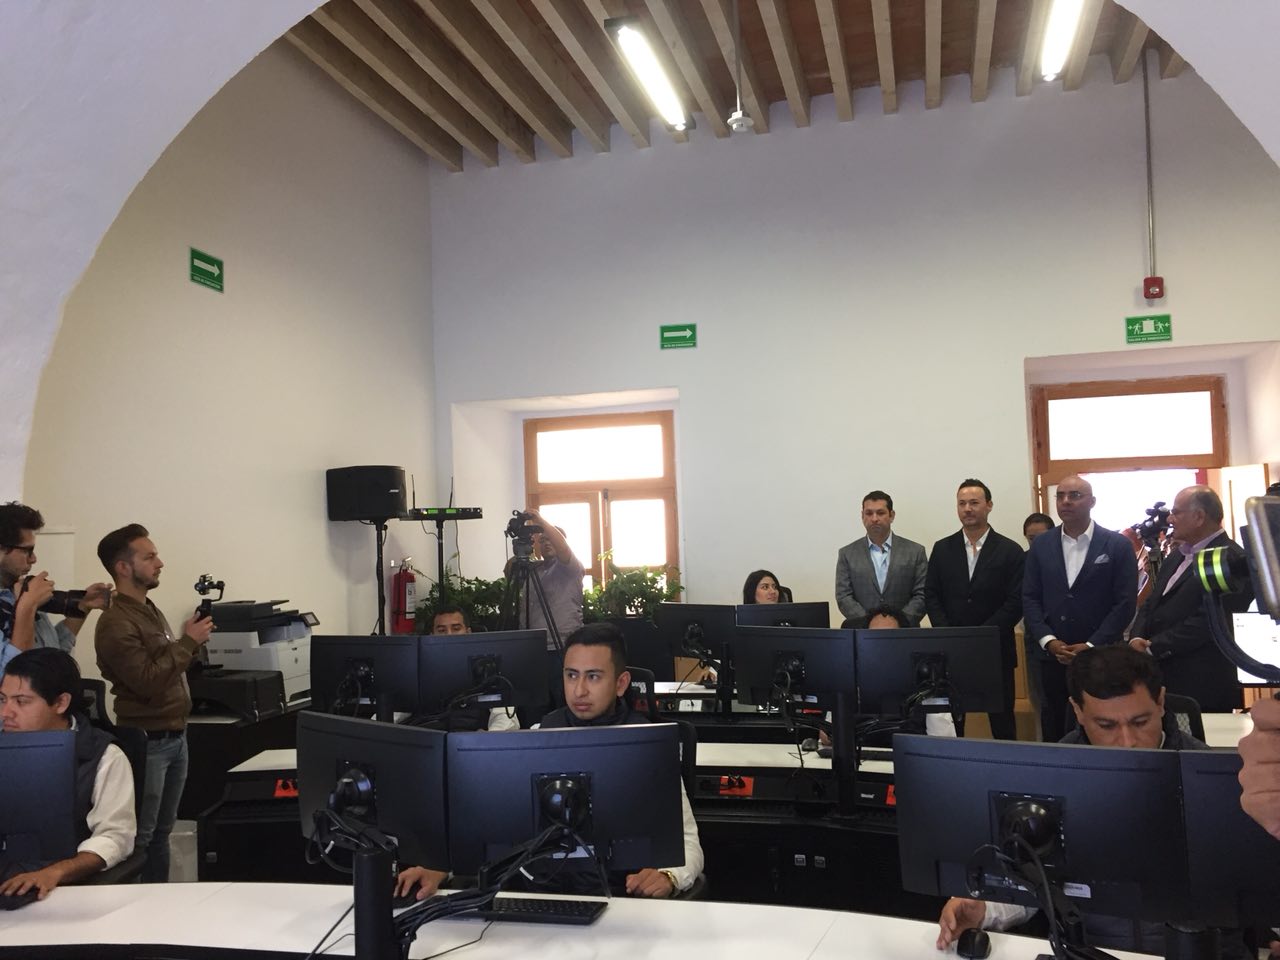  Municipio de Querétaro presenta de forma oficial sistema de semáforos inteligentes